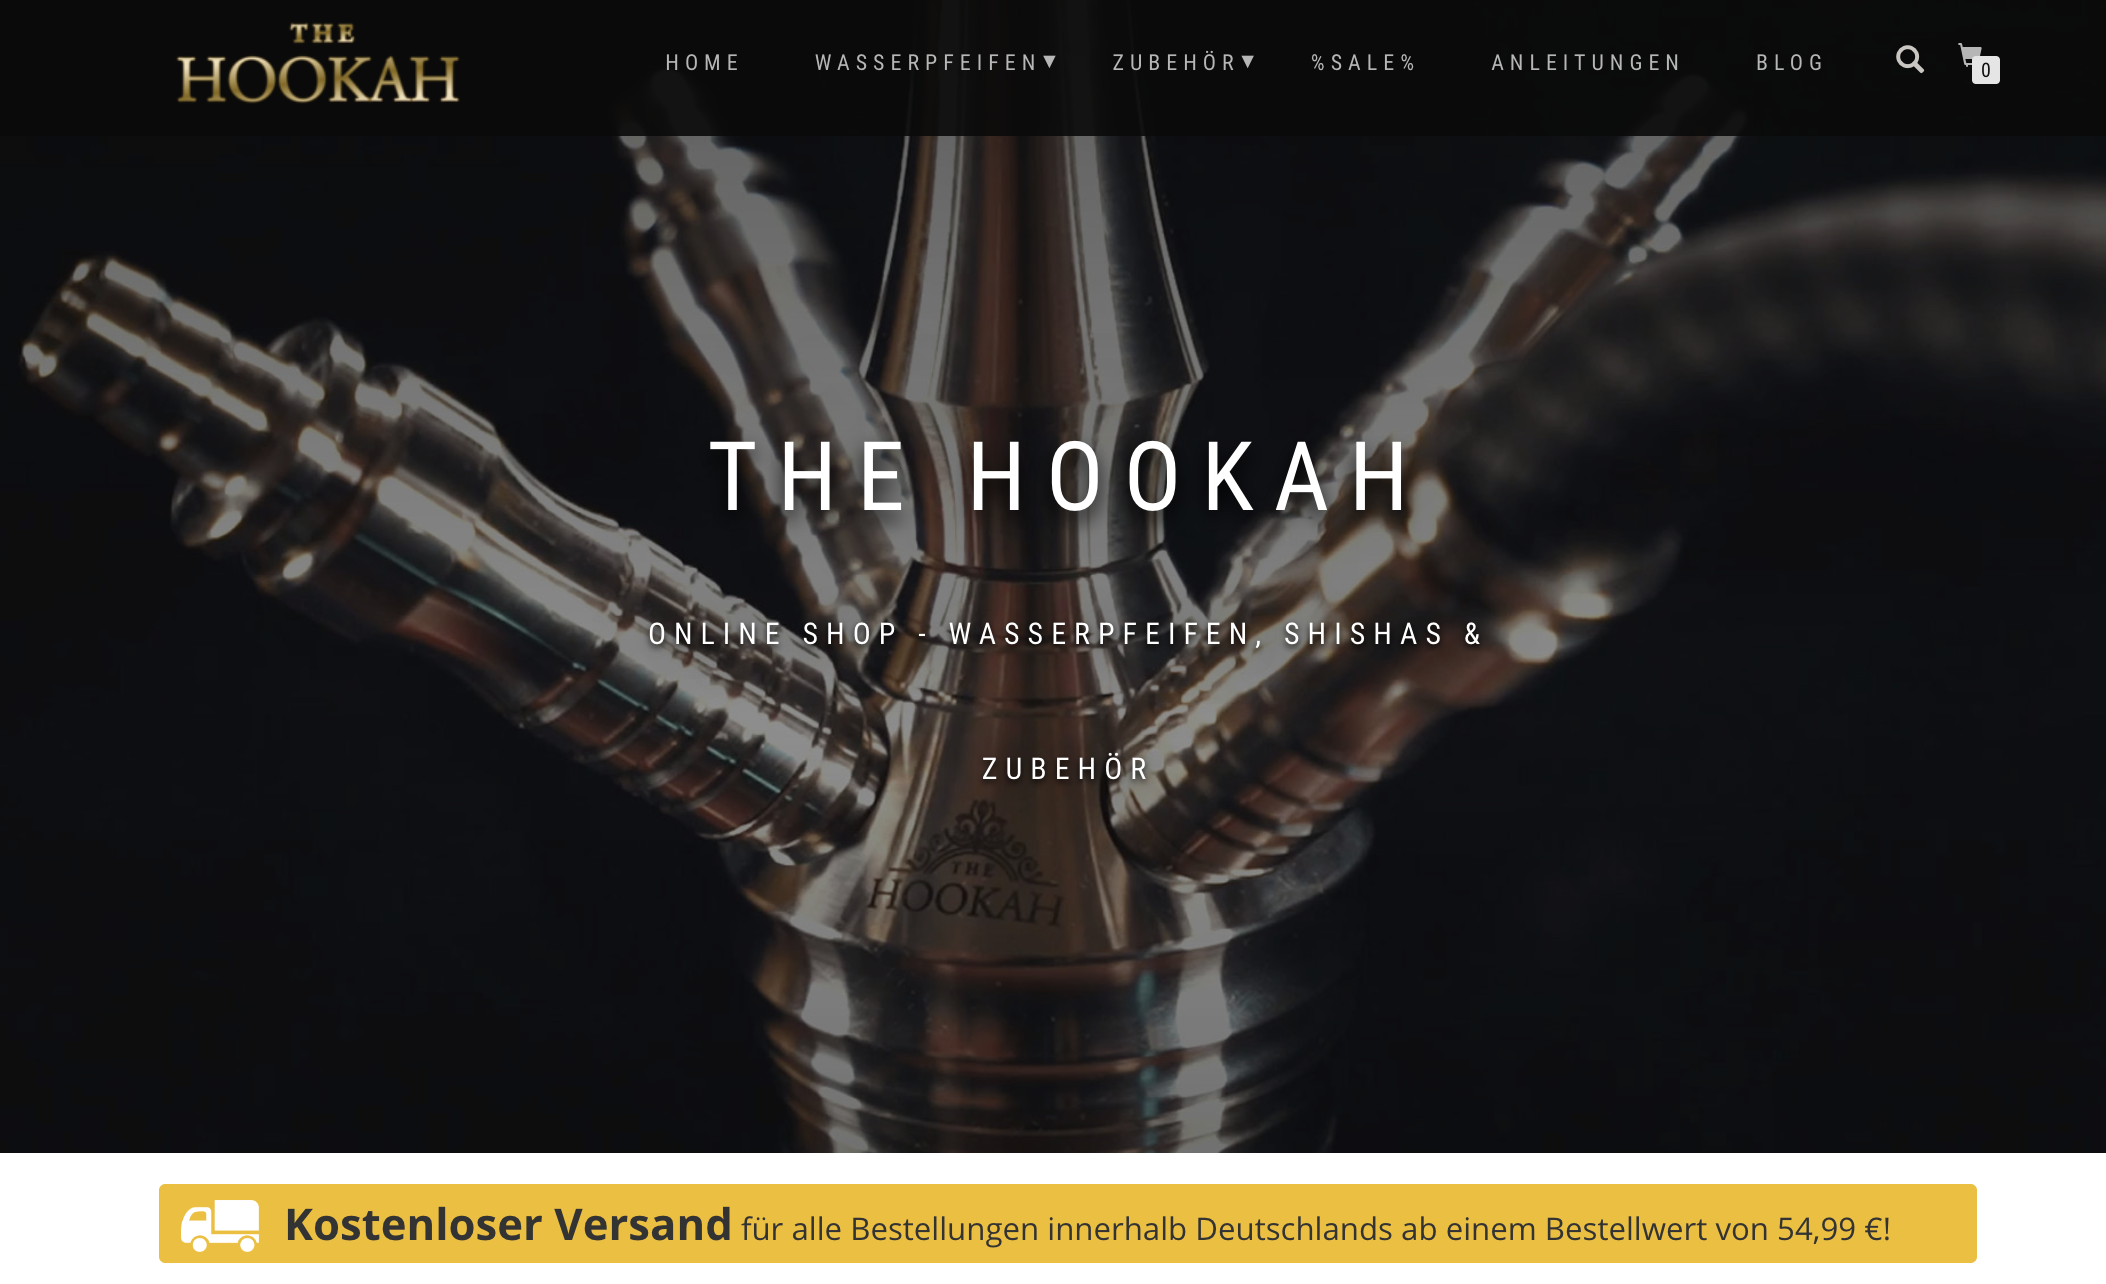 TheHookah DE – Dein Online-Shop für hochwertige Shishas und Zubehör